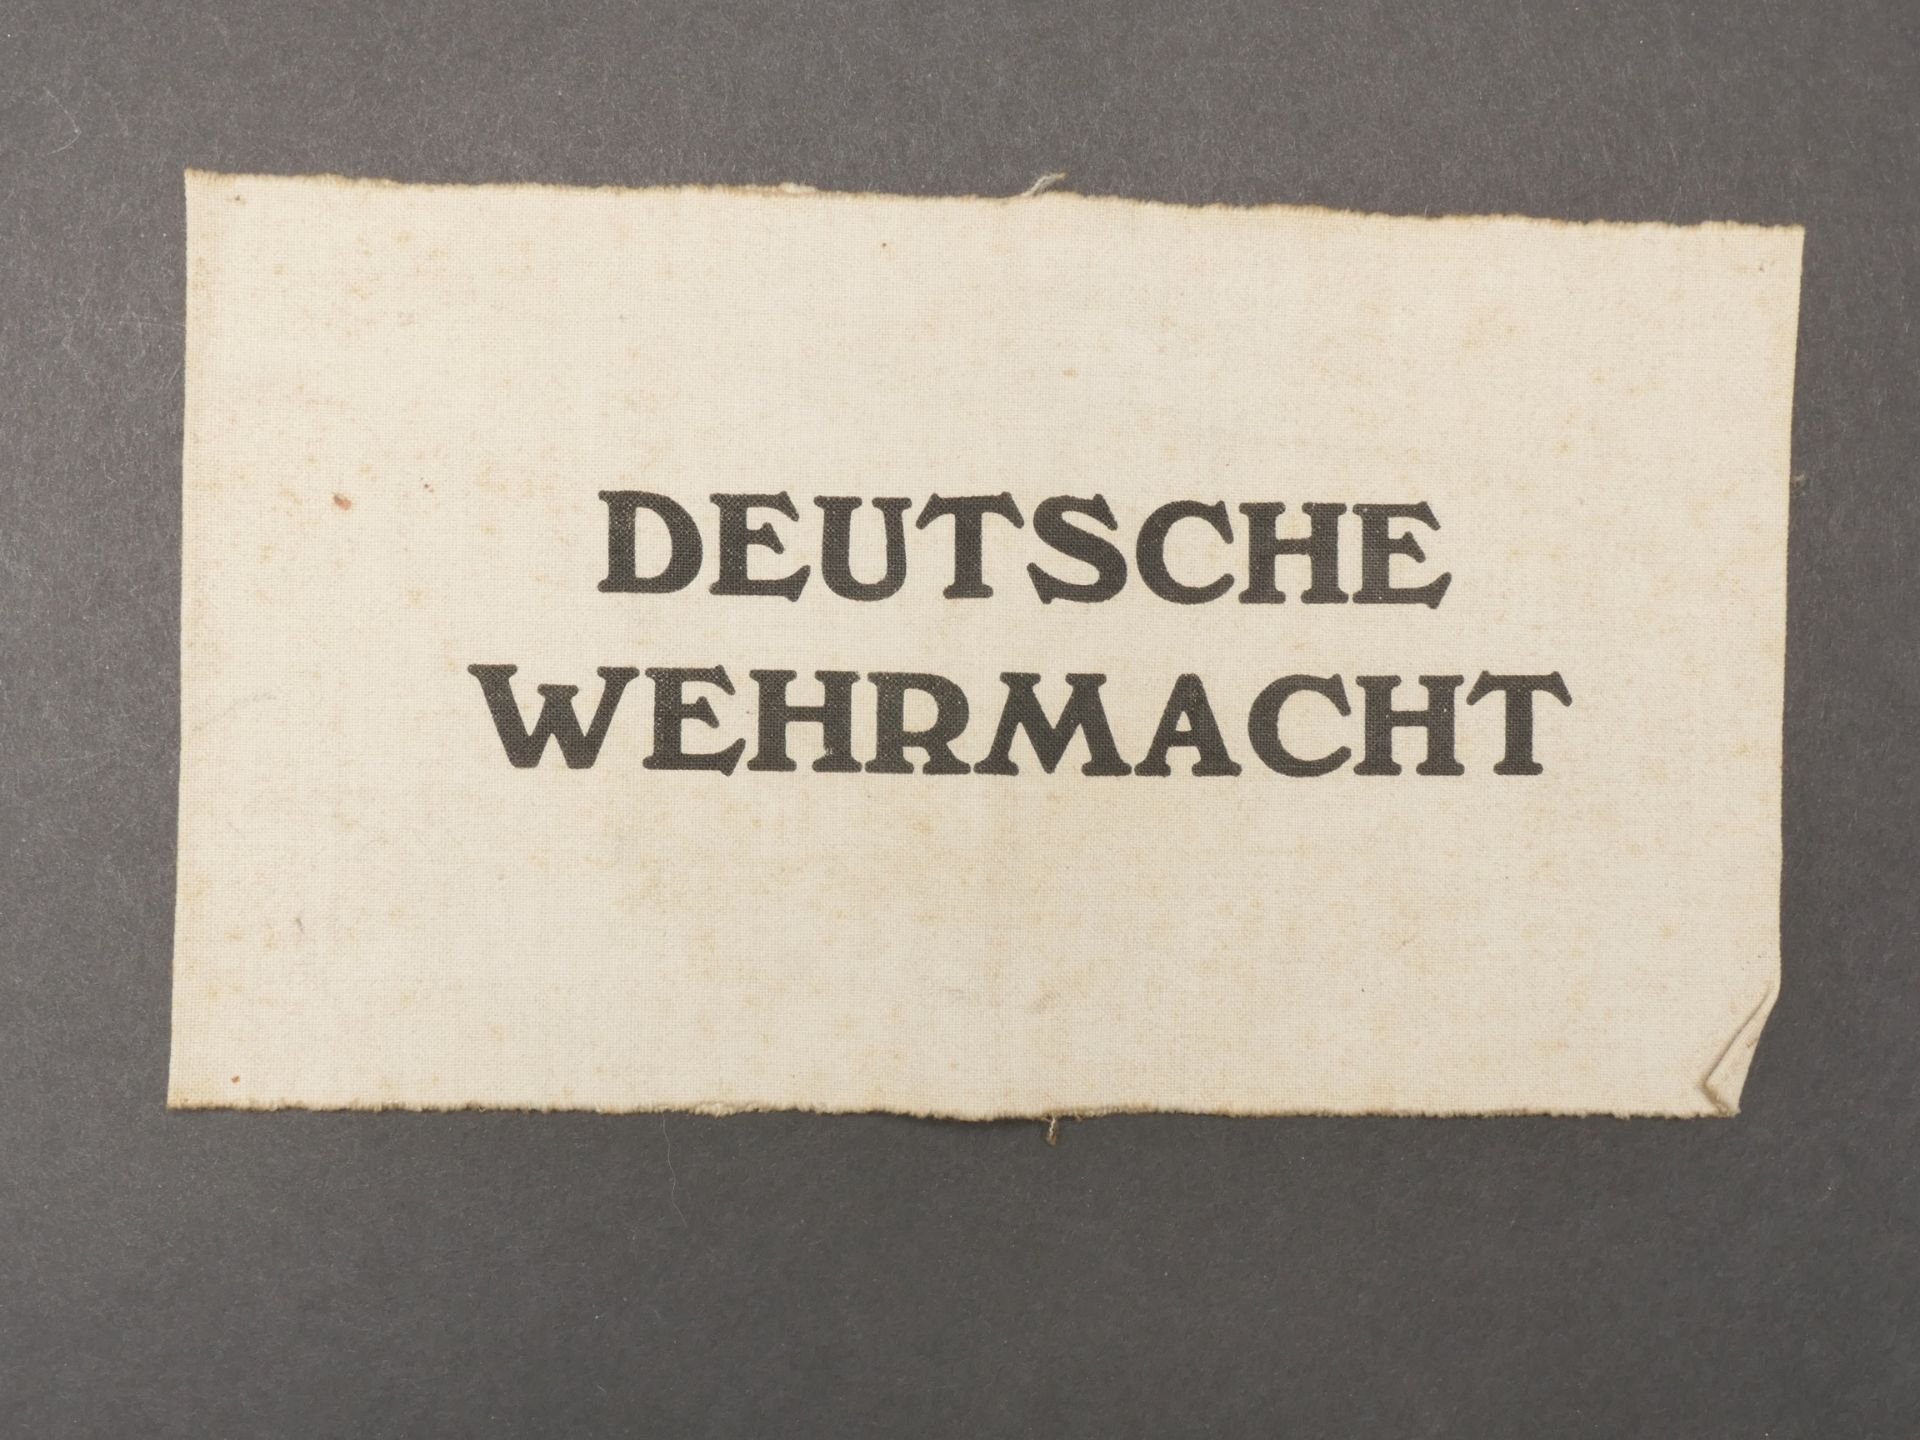 Brassard Deutsche Wehrmacht. Deutsche Wehrmacht armband.  - Bild 2 aus 5